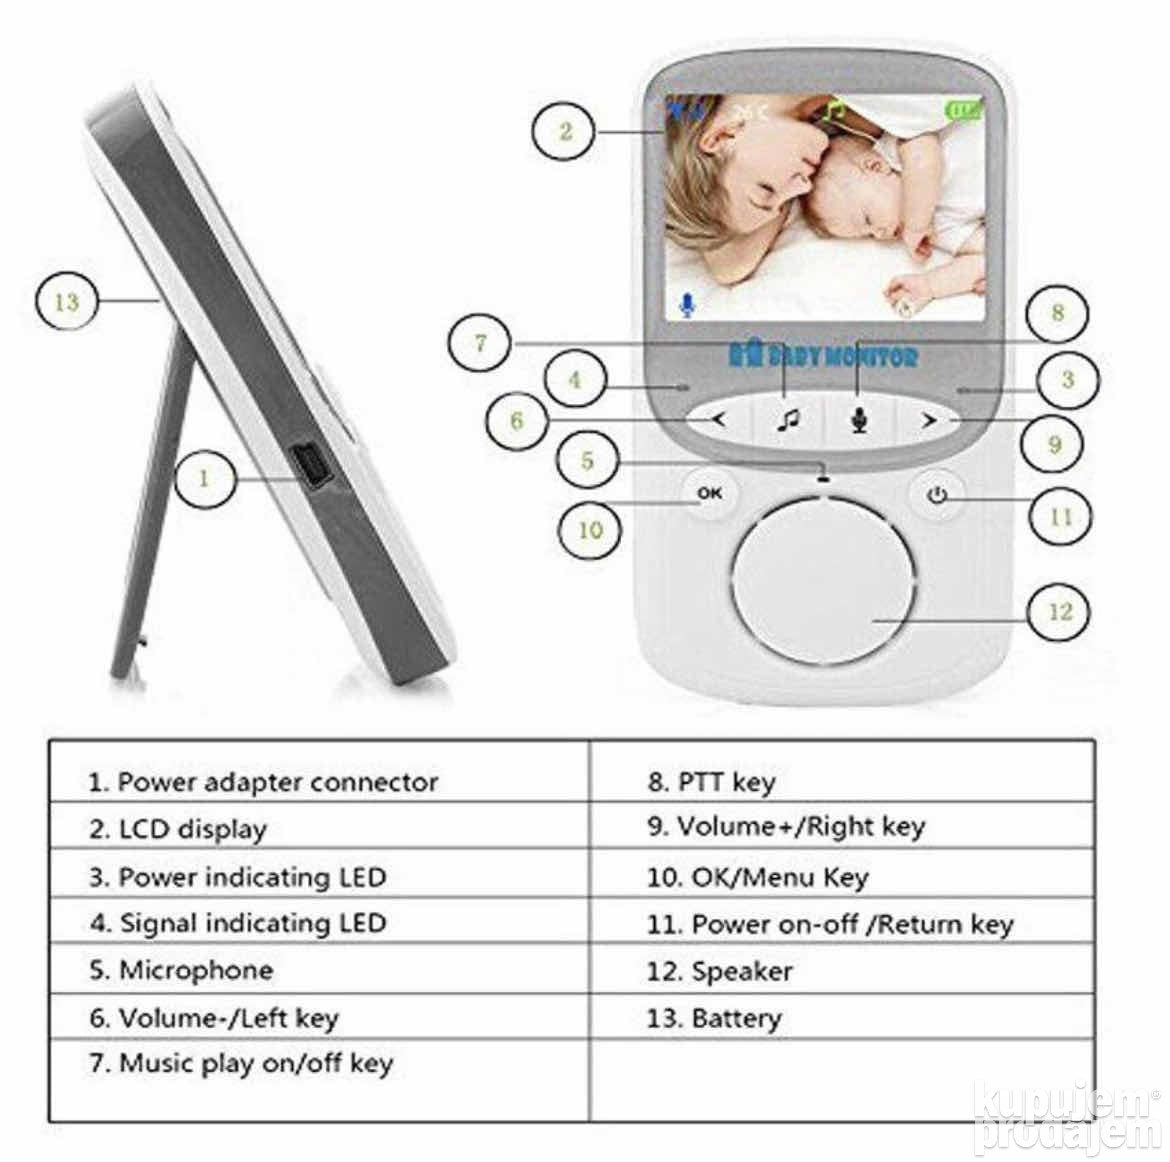 Kamera za bebe Monitor za bebe Video nadzor za bebe - Kamera za bebe Monitor za bebe Video nadzor za bebe